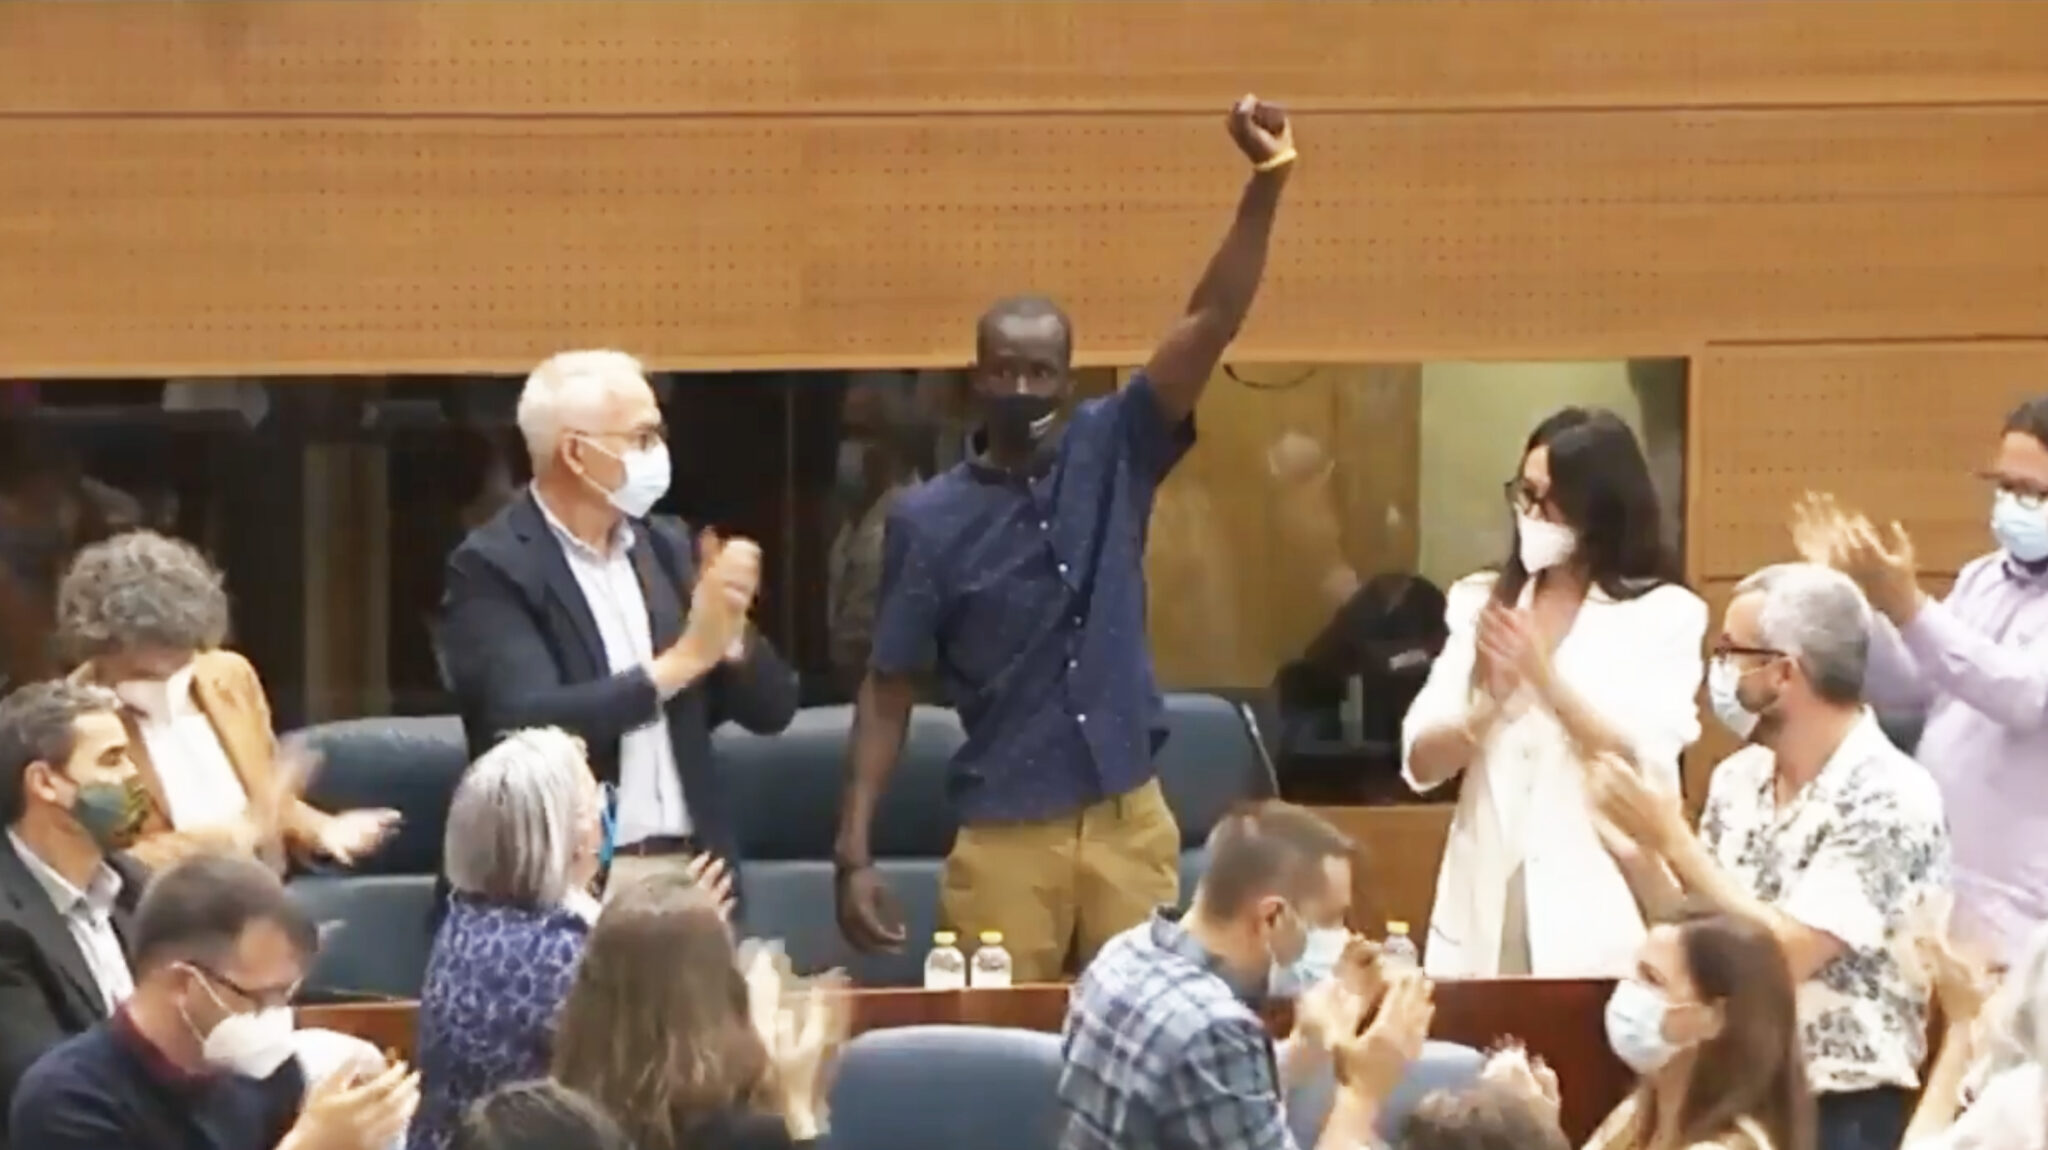 Momento en el que el diputado de Podemos Serigne Mbayé levanta el puño en señal de protesta contra el discurso de Rocío Monasterio